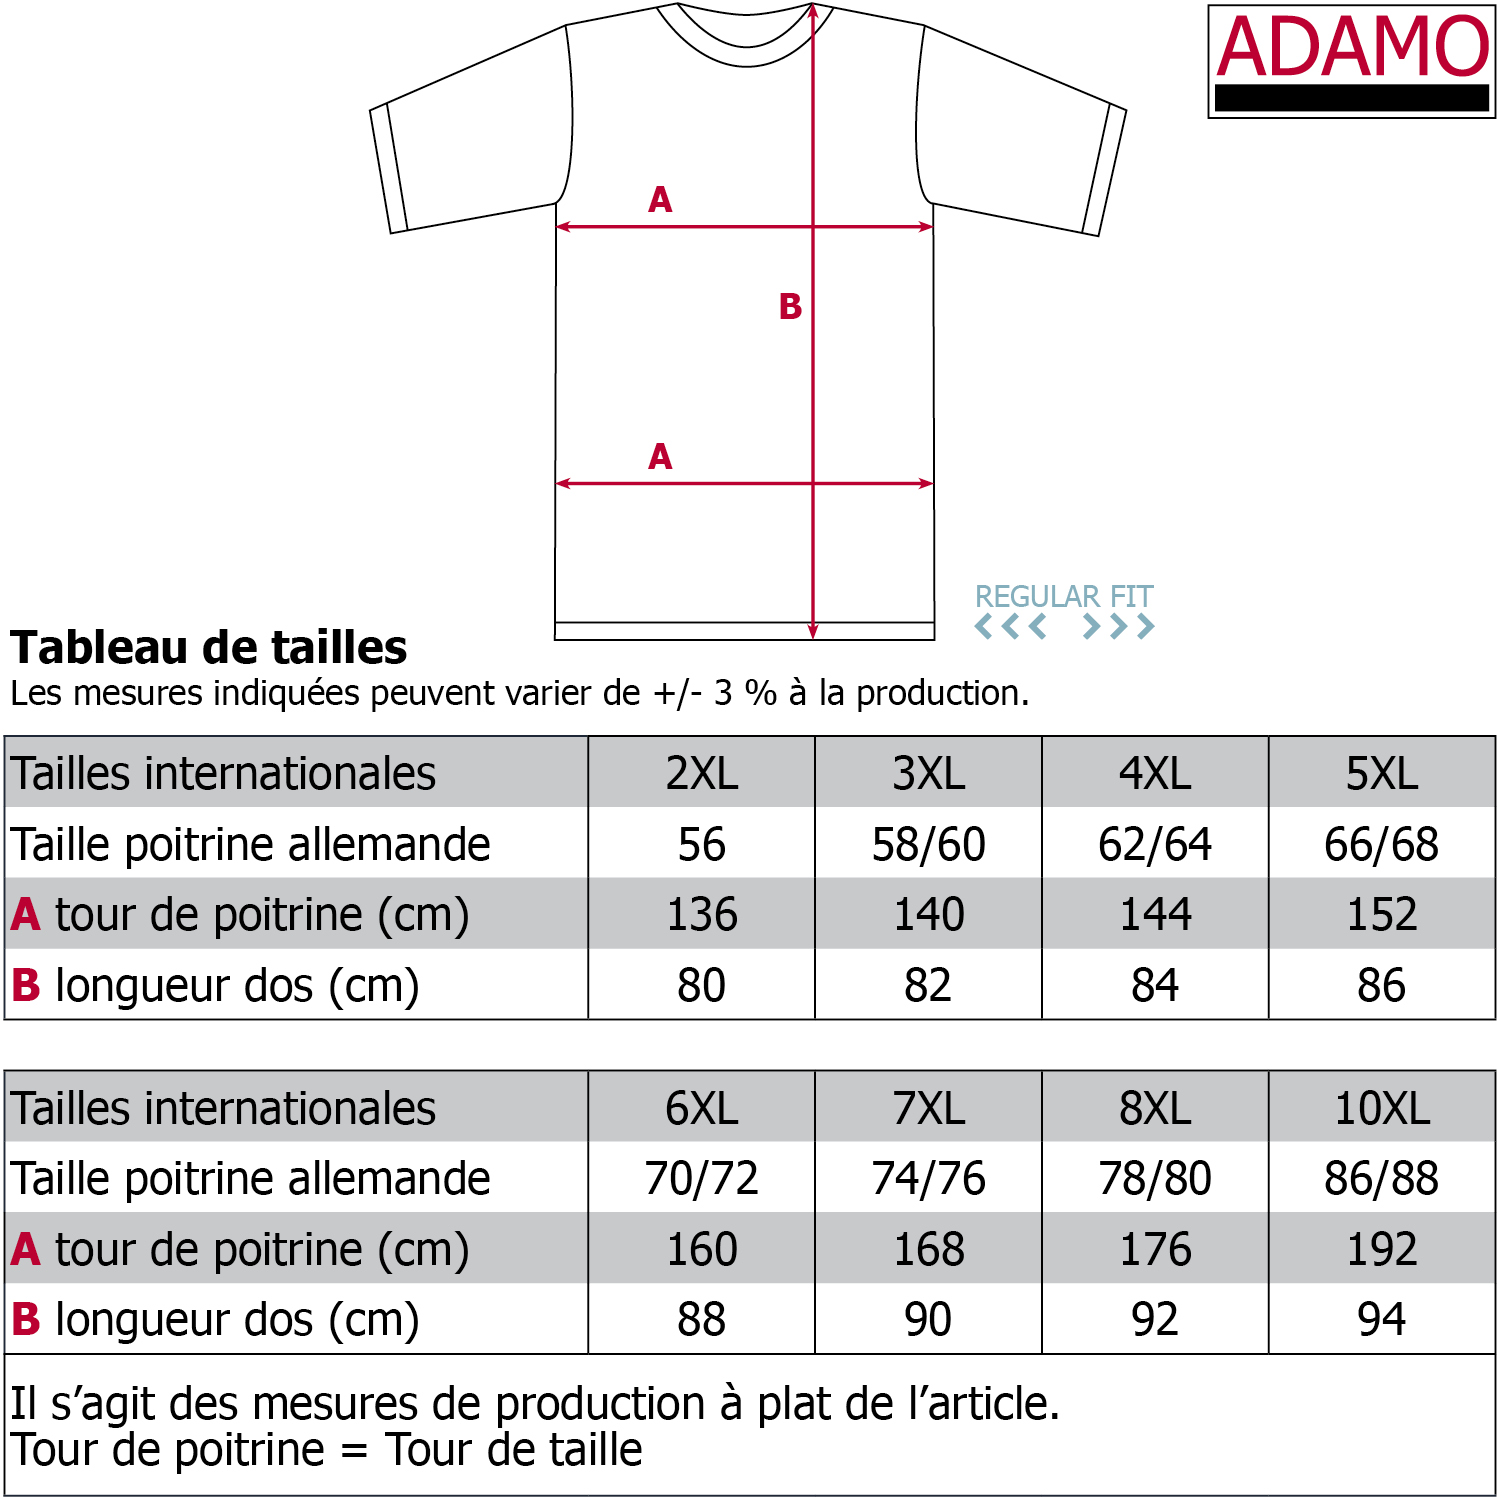 ADAMO Herren Pique Polohemd kurzärmlig mit Print und Stickerei Serie POLO CLUB bis Übergröße 10XL Regular Fit